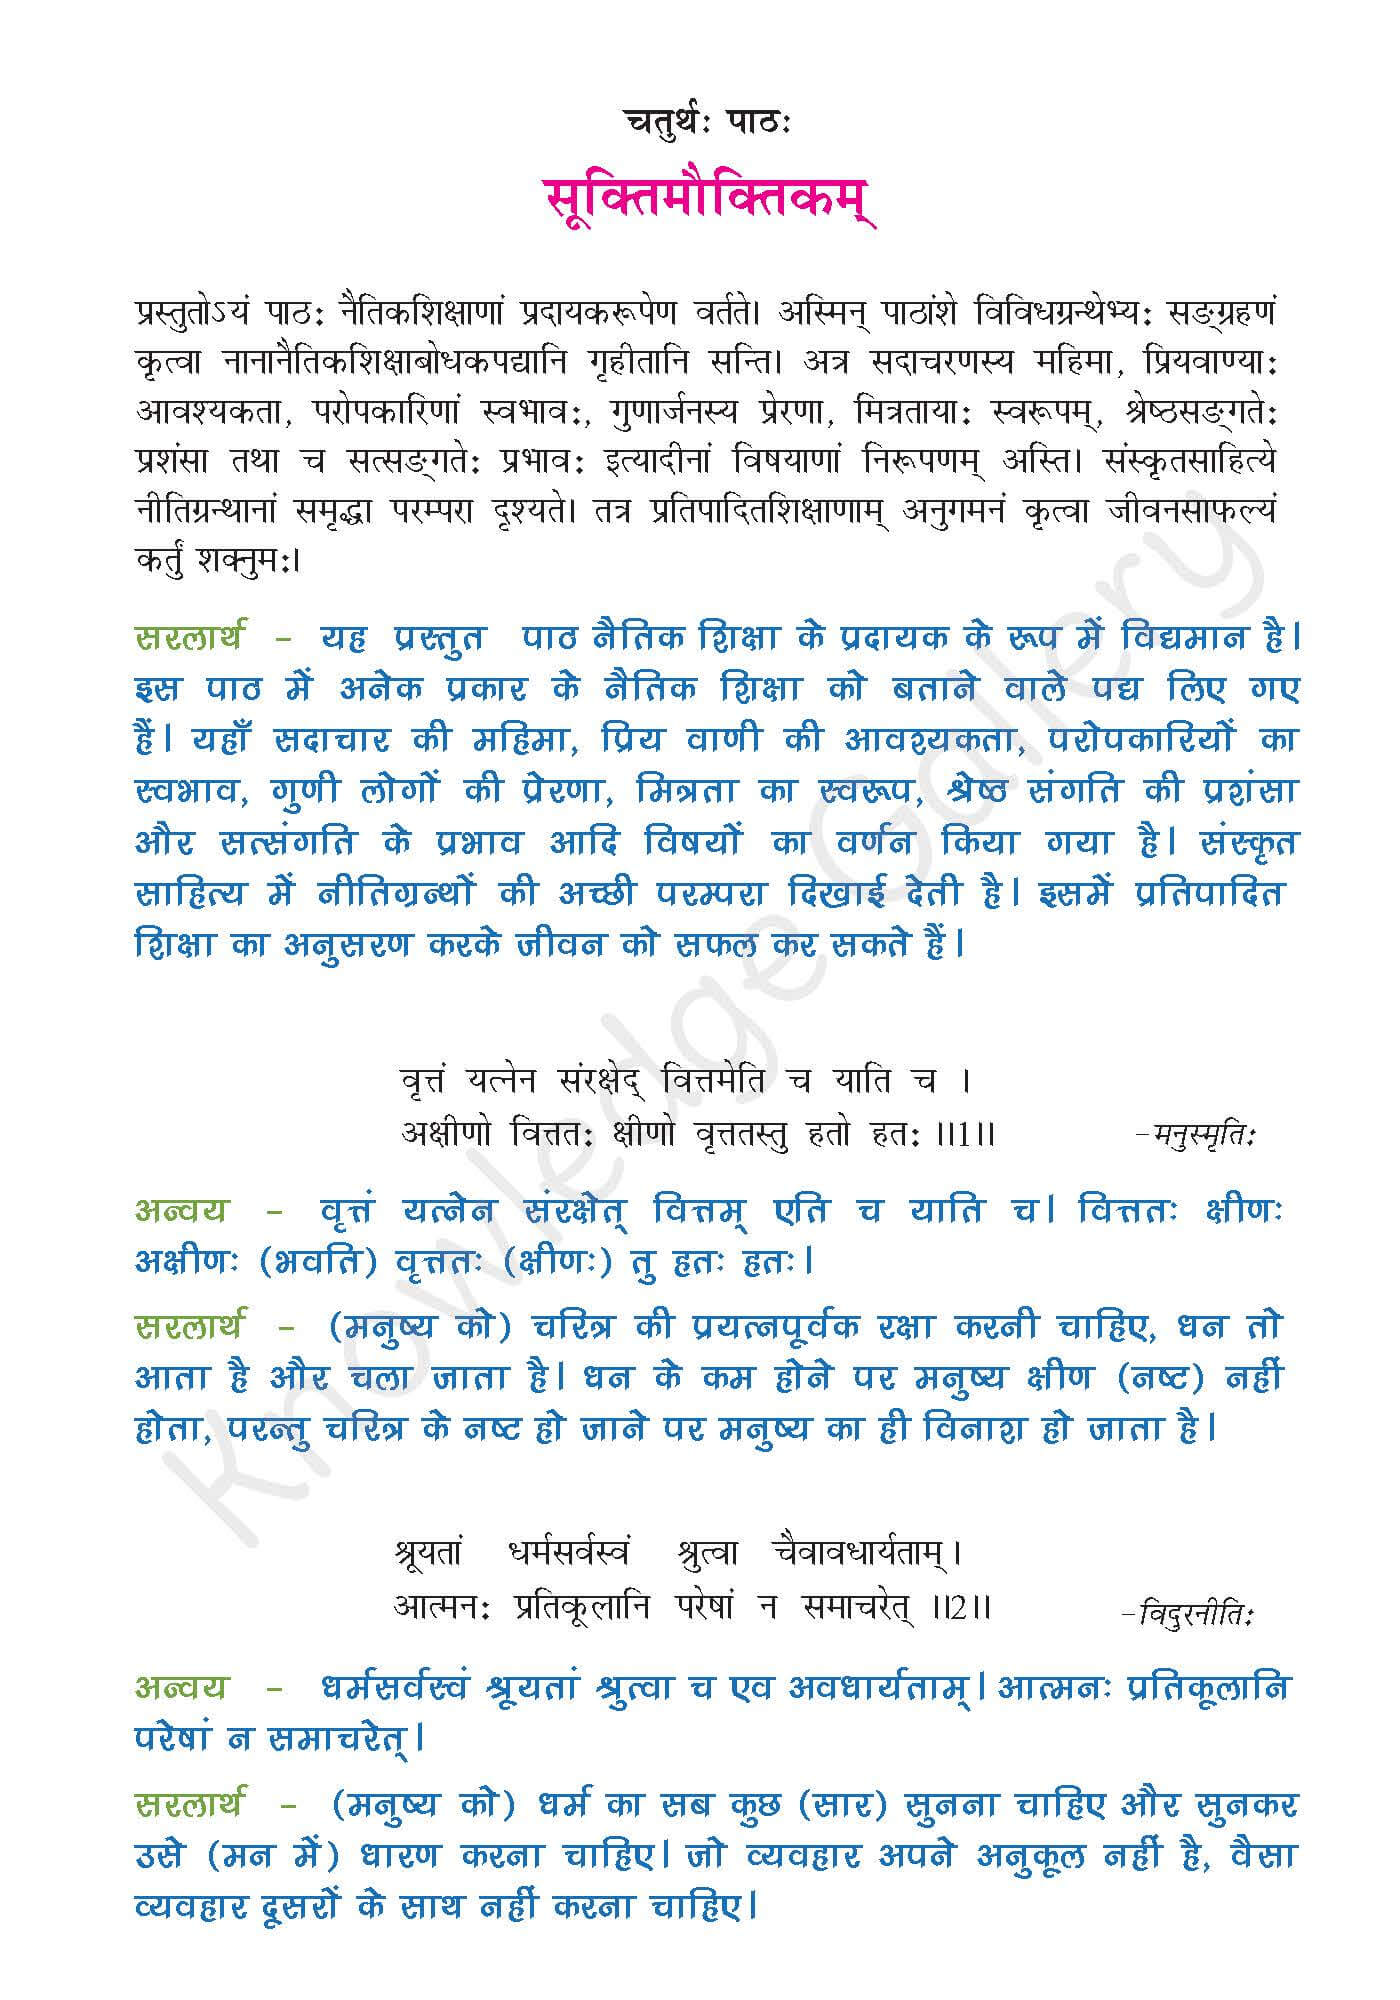 NCERT Solution For Class 9 Sanskrit Chapter 4 part 1